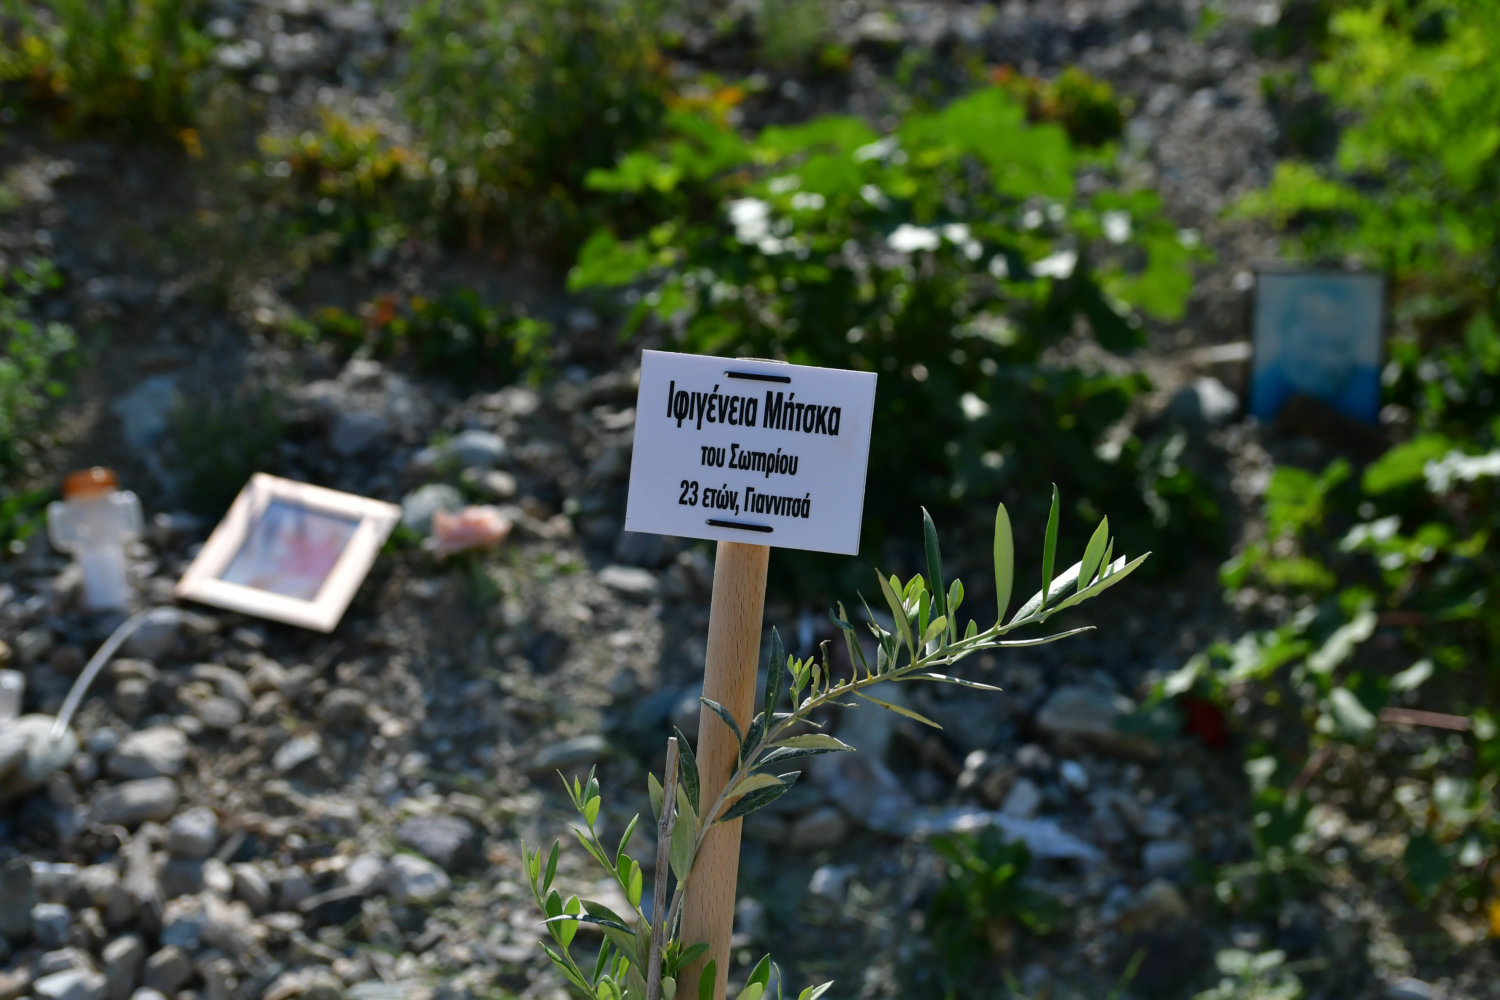 Συγκλονιστική στιγμή στο σημείο της τραγωδίας στα Τέμπη (φωτογραφία)